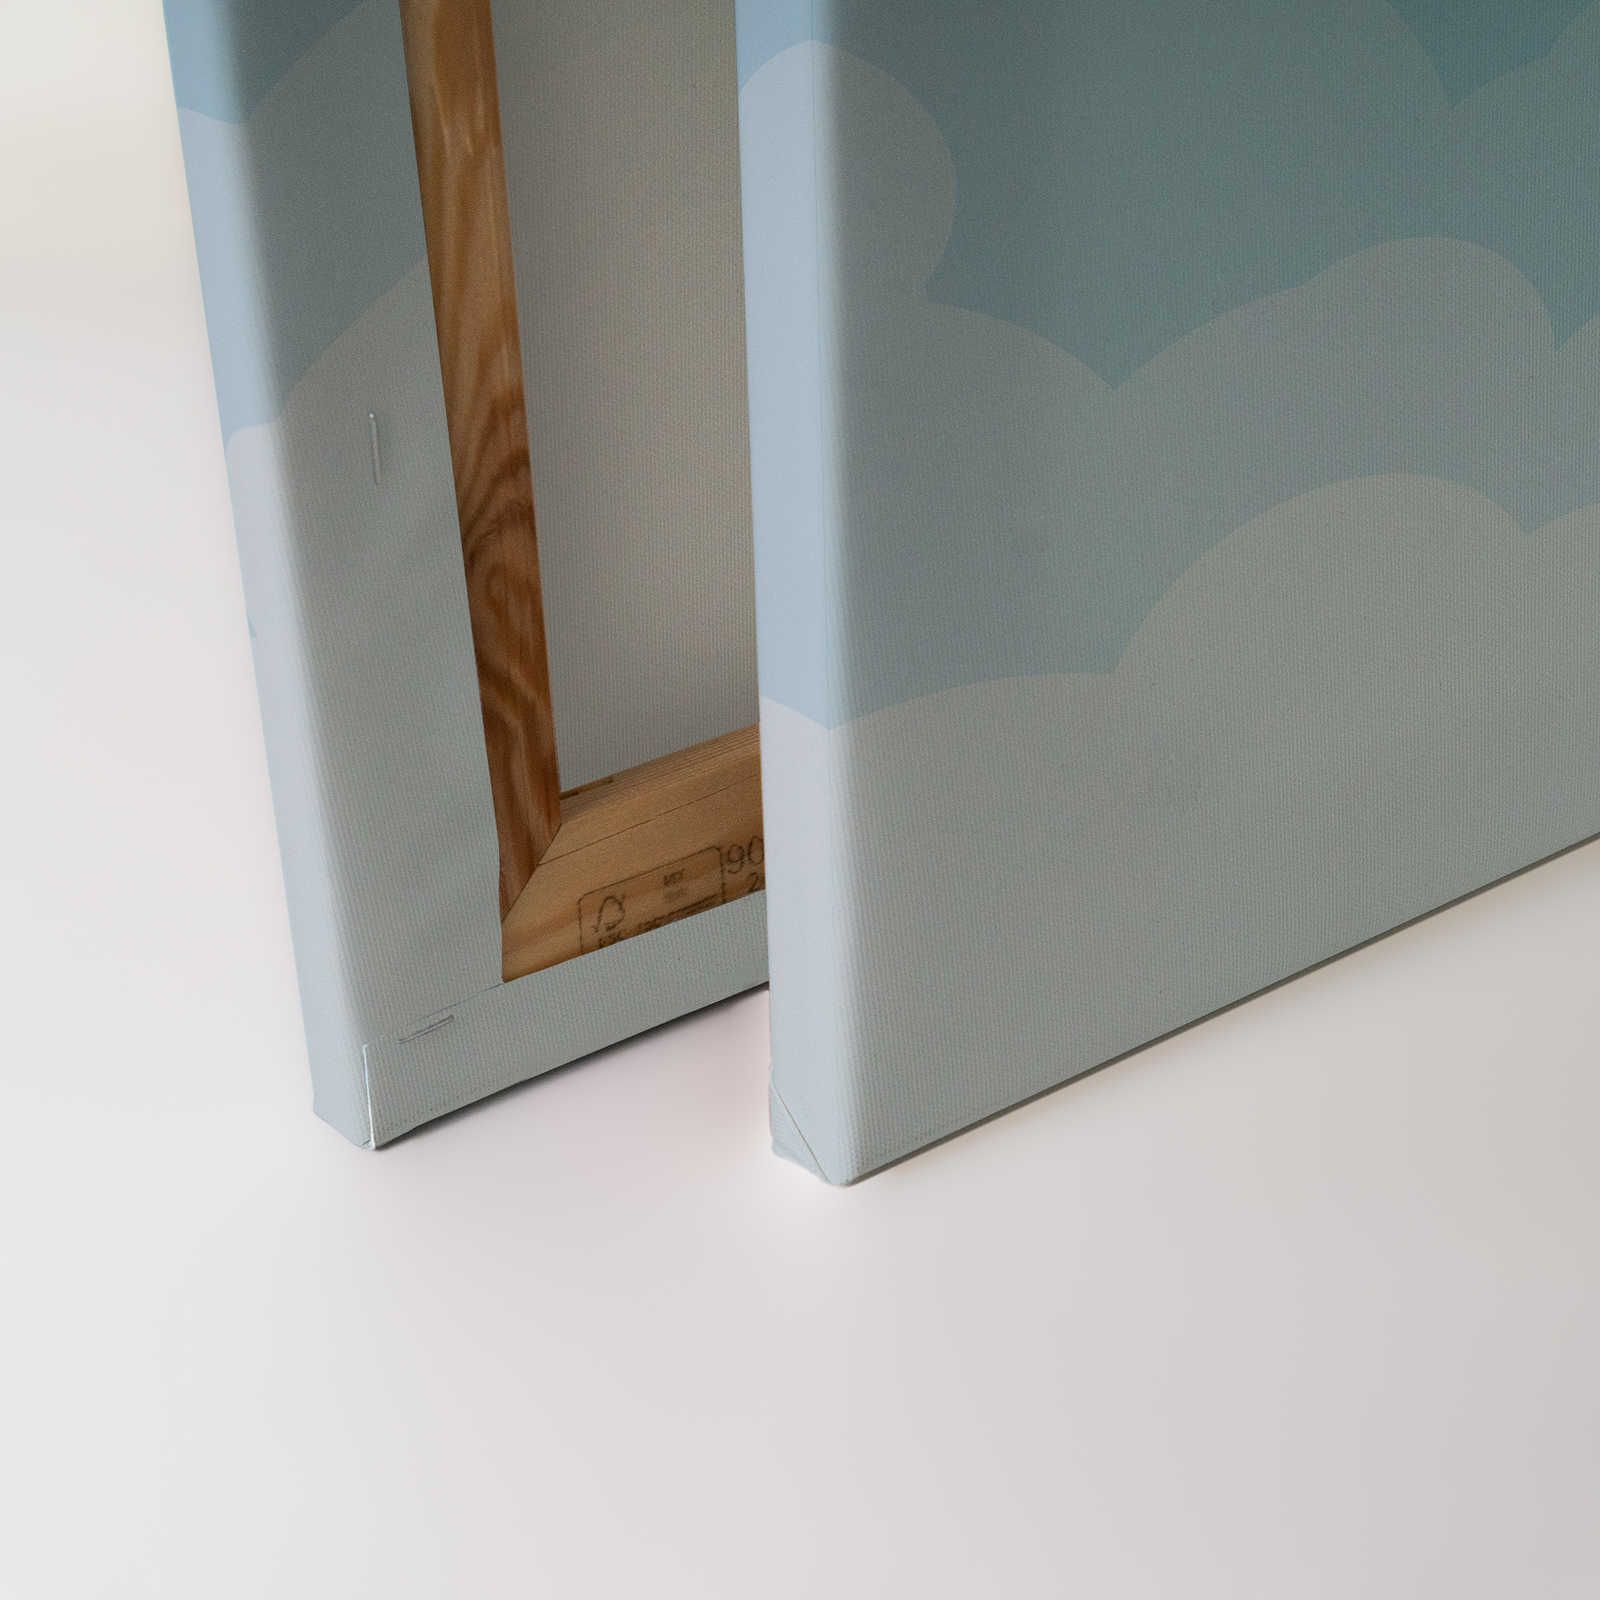             Canvas Lucht met wolken in stripstijl - 90 cm x 60 cm
        